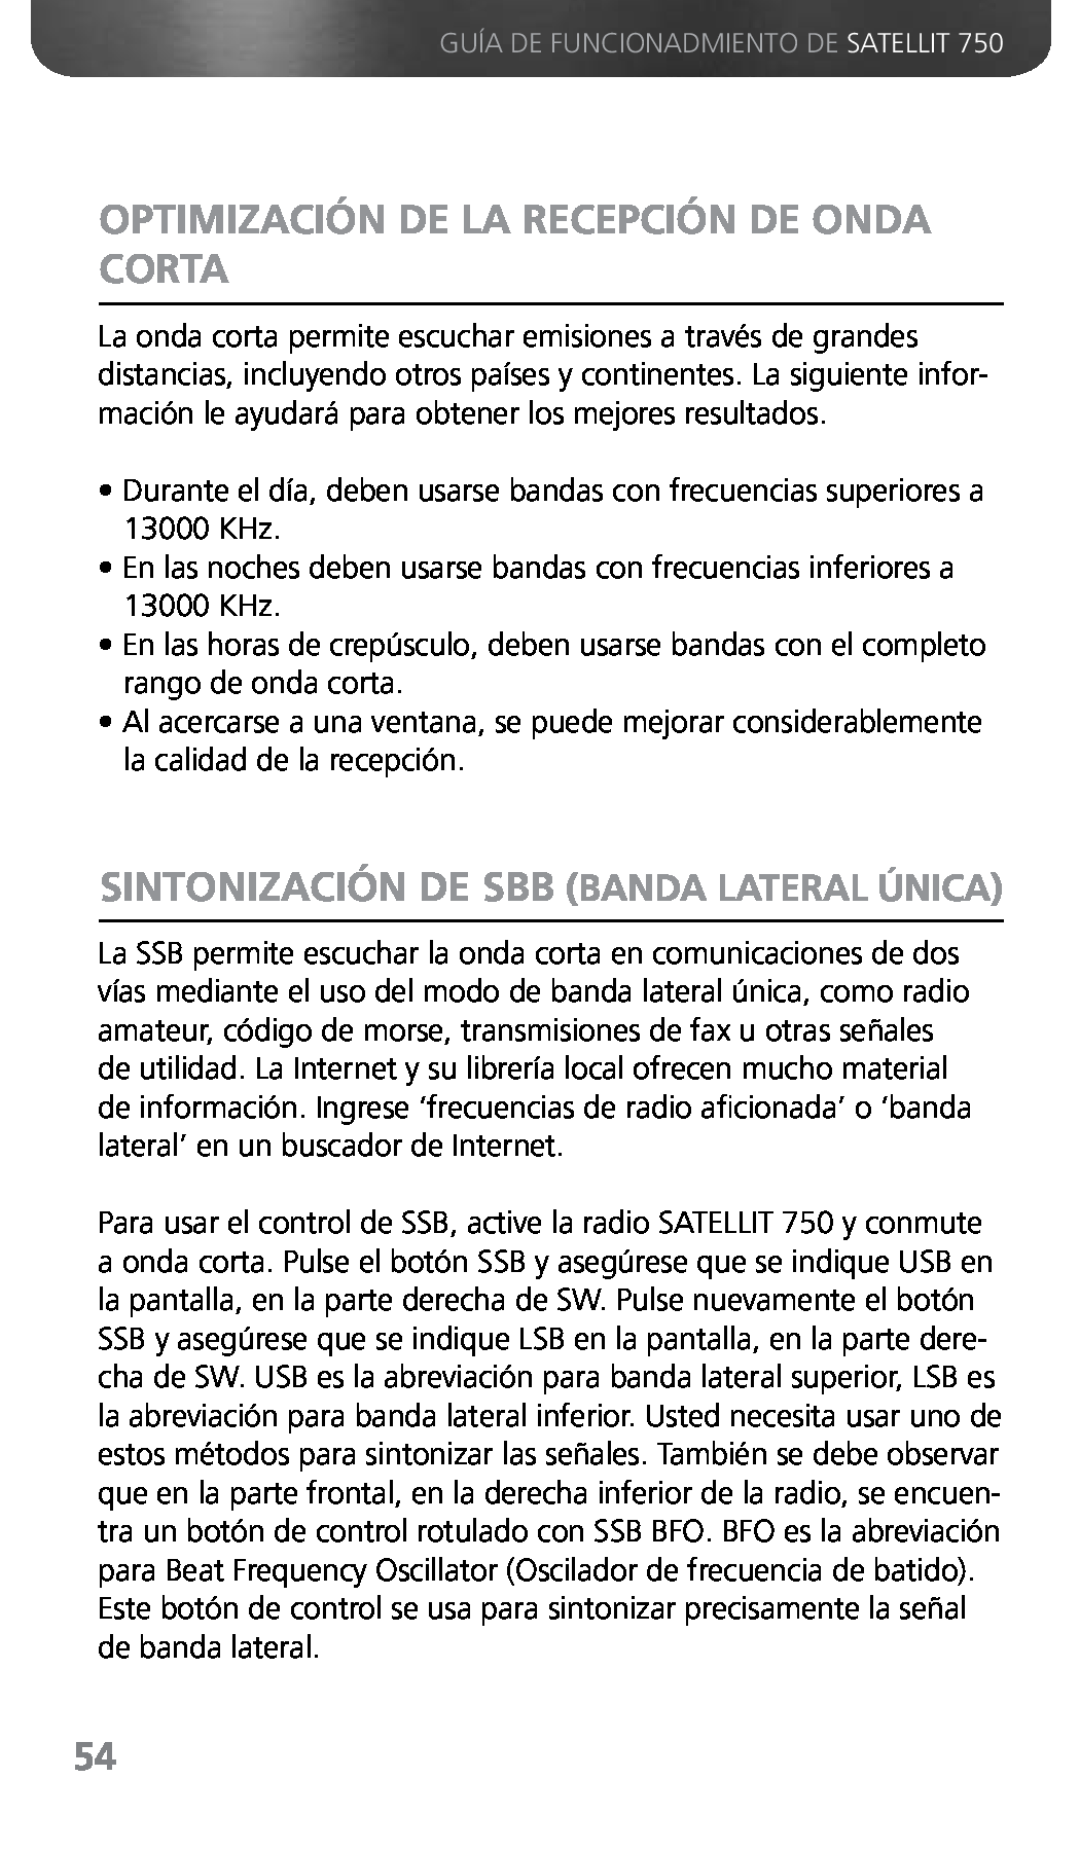 Grundig 750 owner manual Optimización De La Recepción De Onda Corta, Sintonización De Sbb Banda Lateral Única 